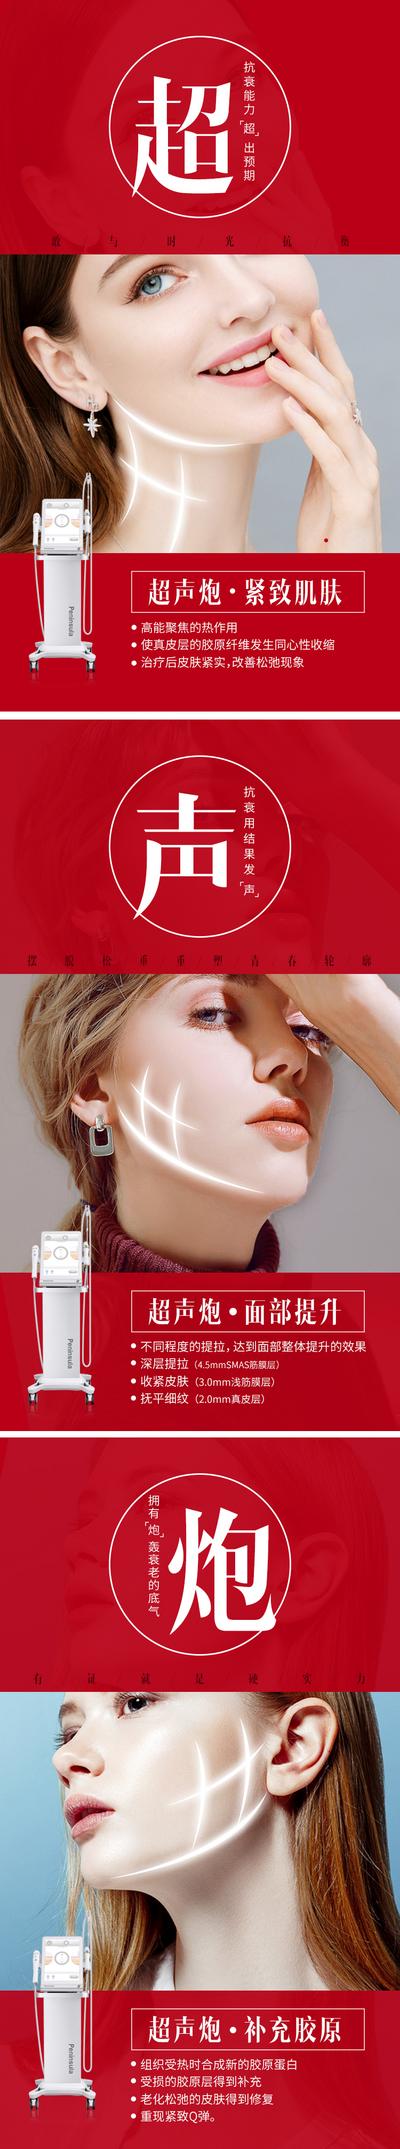 南门网 广告 海报 医美 超声炮 皮肤 仪器 设备 三宫格